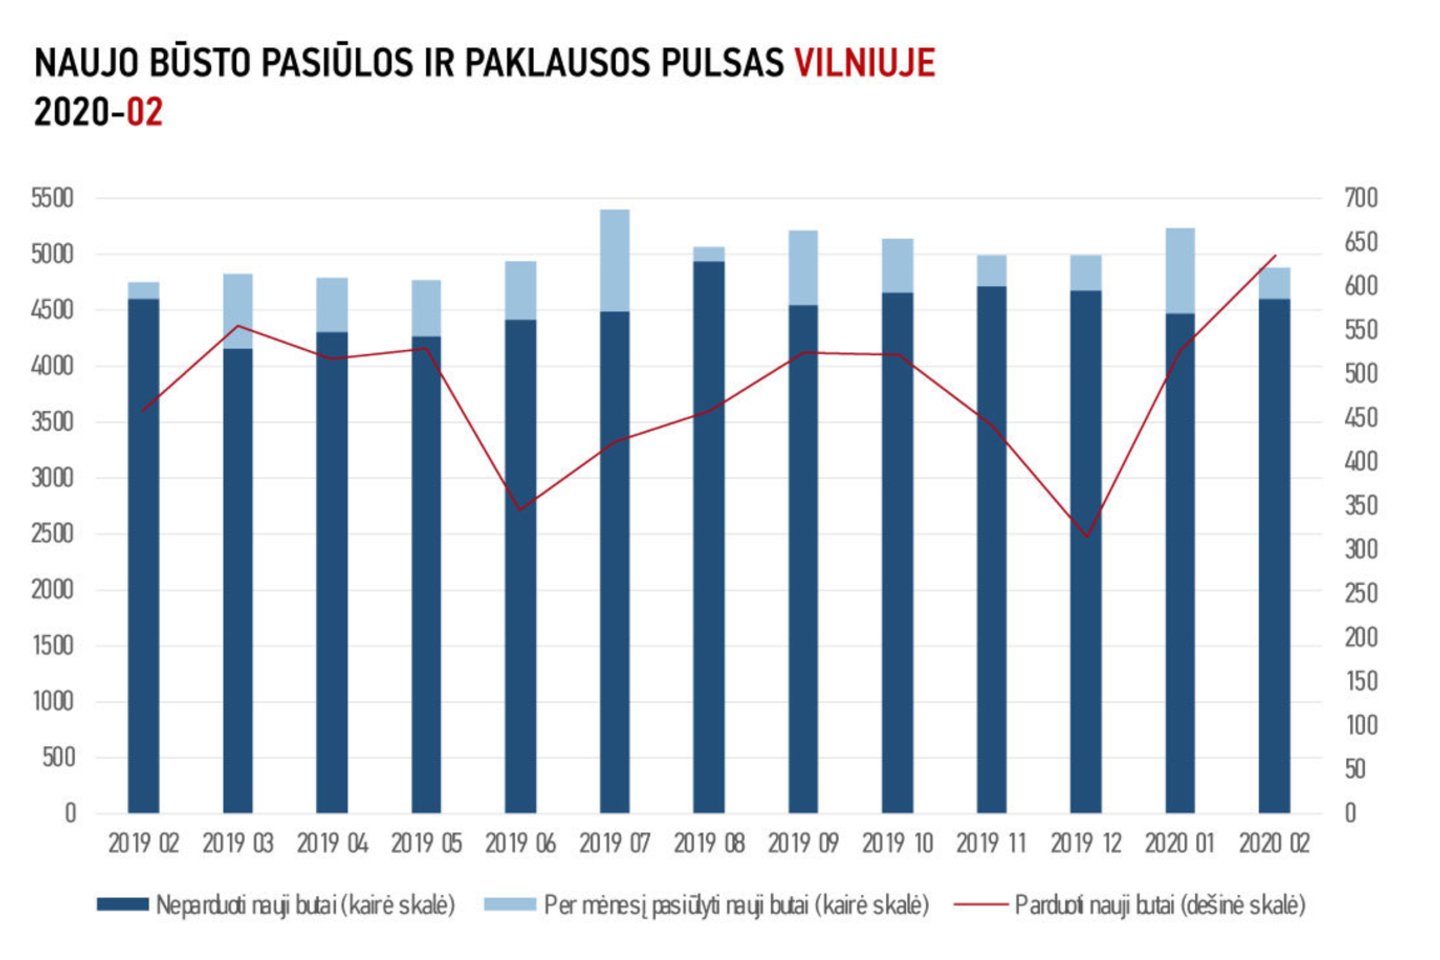 Vilniuje buvo parduoti 634 nauji butai. Lyginant su 2019-ųjų vasariu – 38 proc. daugiau. Lyginant su 2020-ųjų sausiu – 21 proc. daugiau. Lyginant su 2019-ųjų vasariu, naujo būsto kainos augo visuose segmentuose. Ekonominės klasės būsto kaina padidėjo 9 proc., vidutinės – 7 proc., prestižinės – 2 proc.<br>„Inreal“ inf. ir nuotr.